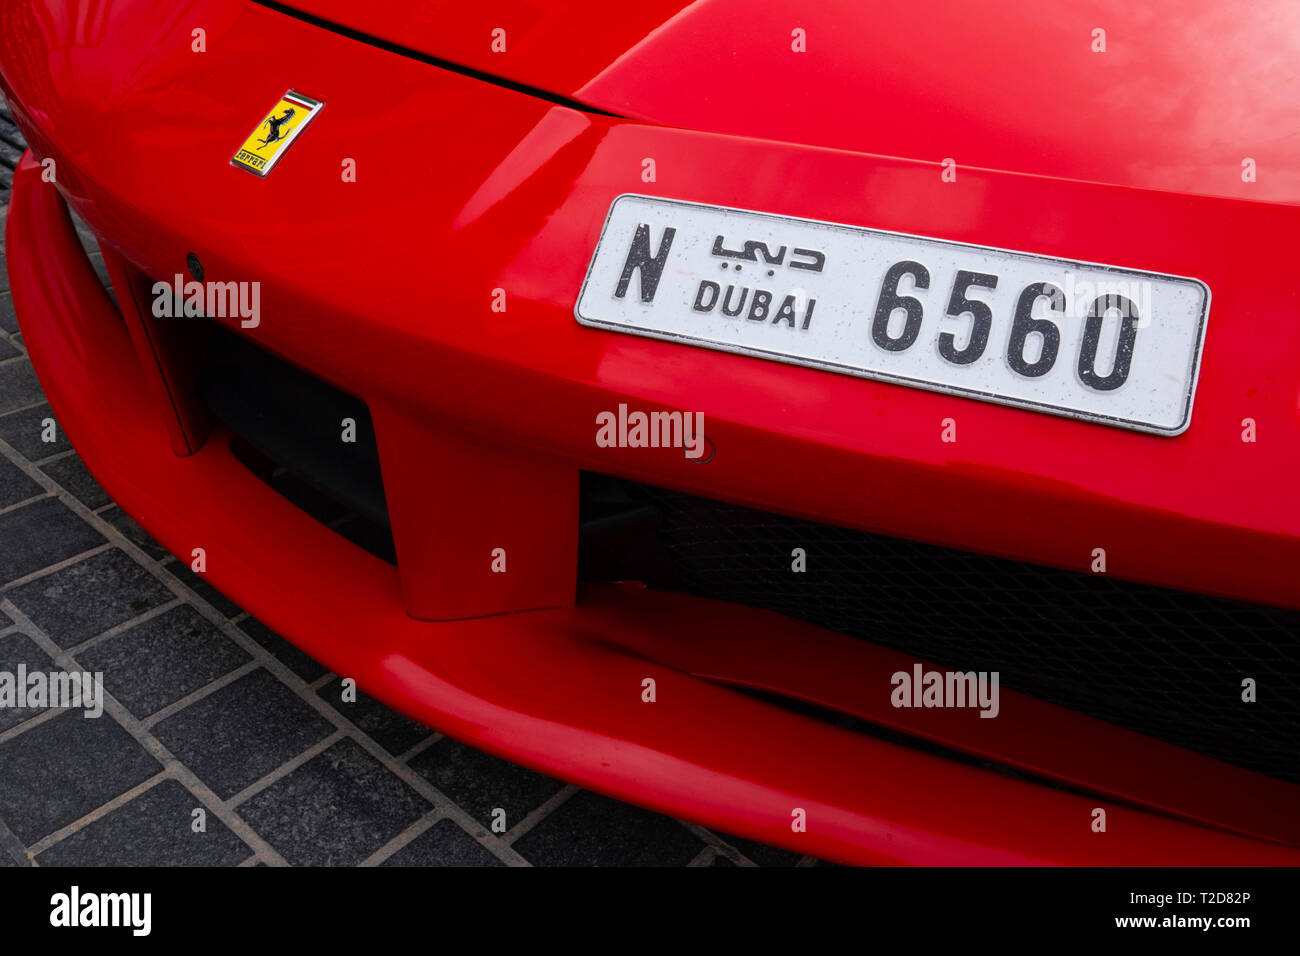 Vista frontal de un rojo Ferrari supercar con una matrícula de Dubai Foto de stock